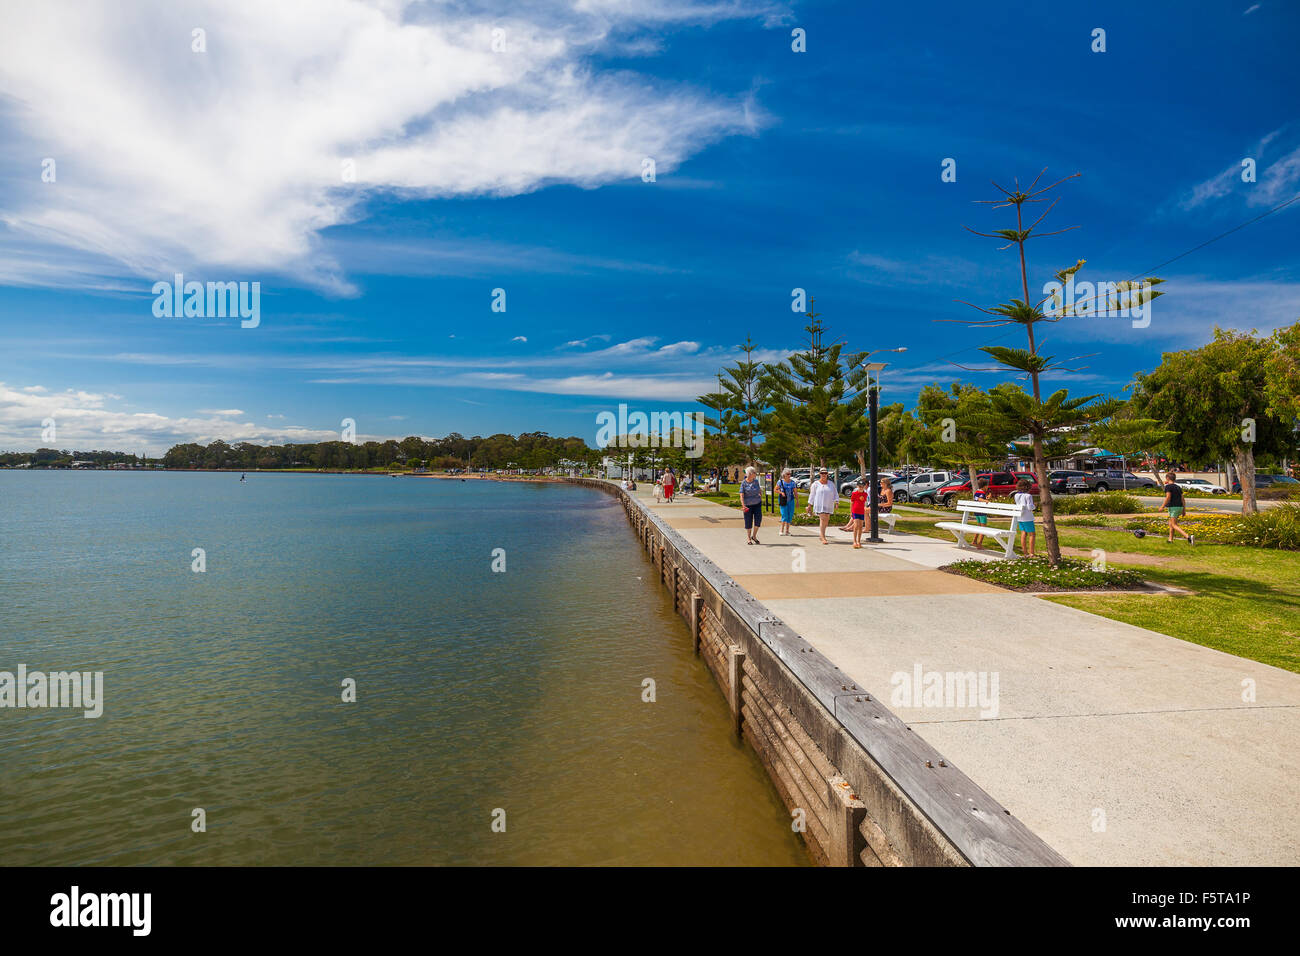 BRISBANE, AUS - 1. November 2015: Woterfront Promenade am a Woody Point, Redcliffe, Queensland, Australien. Woody Point ist eine beliebte, r Stockfoto